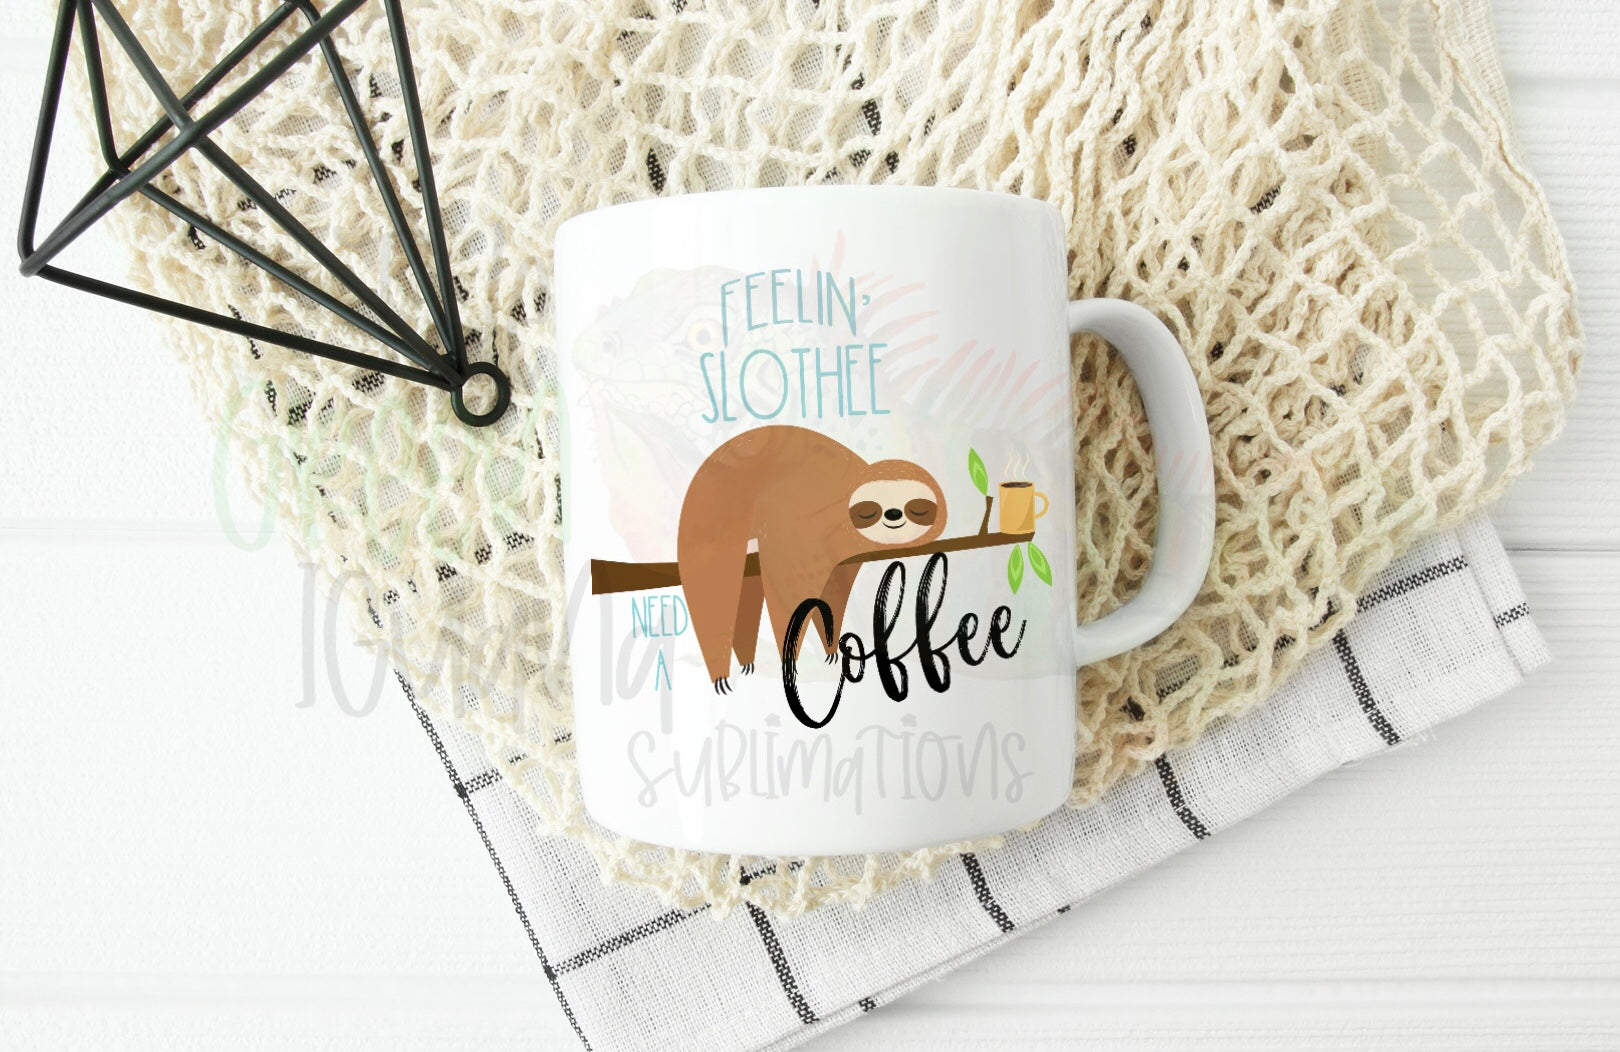 Feelin’ Slothee, need a coffee